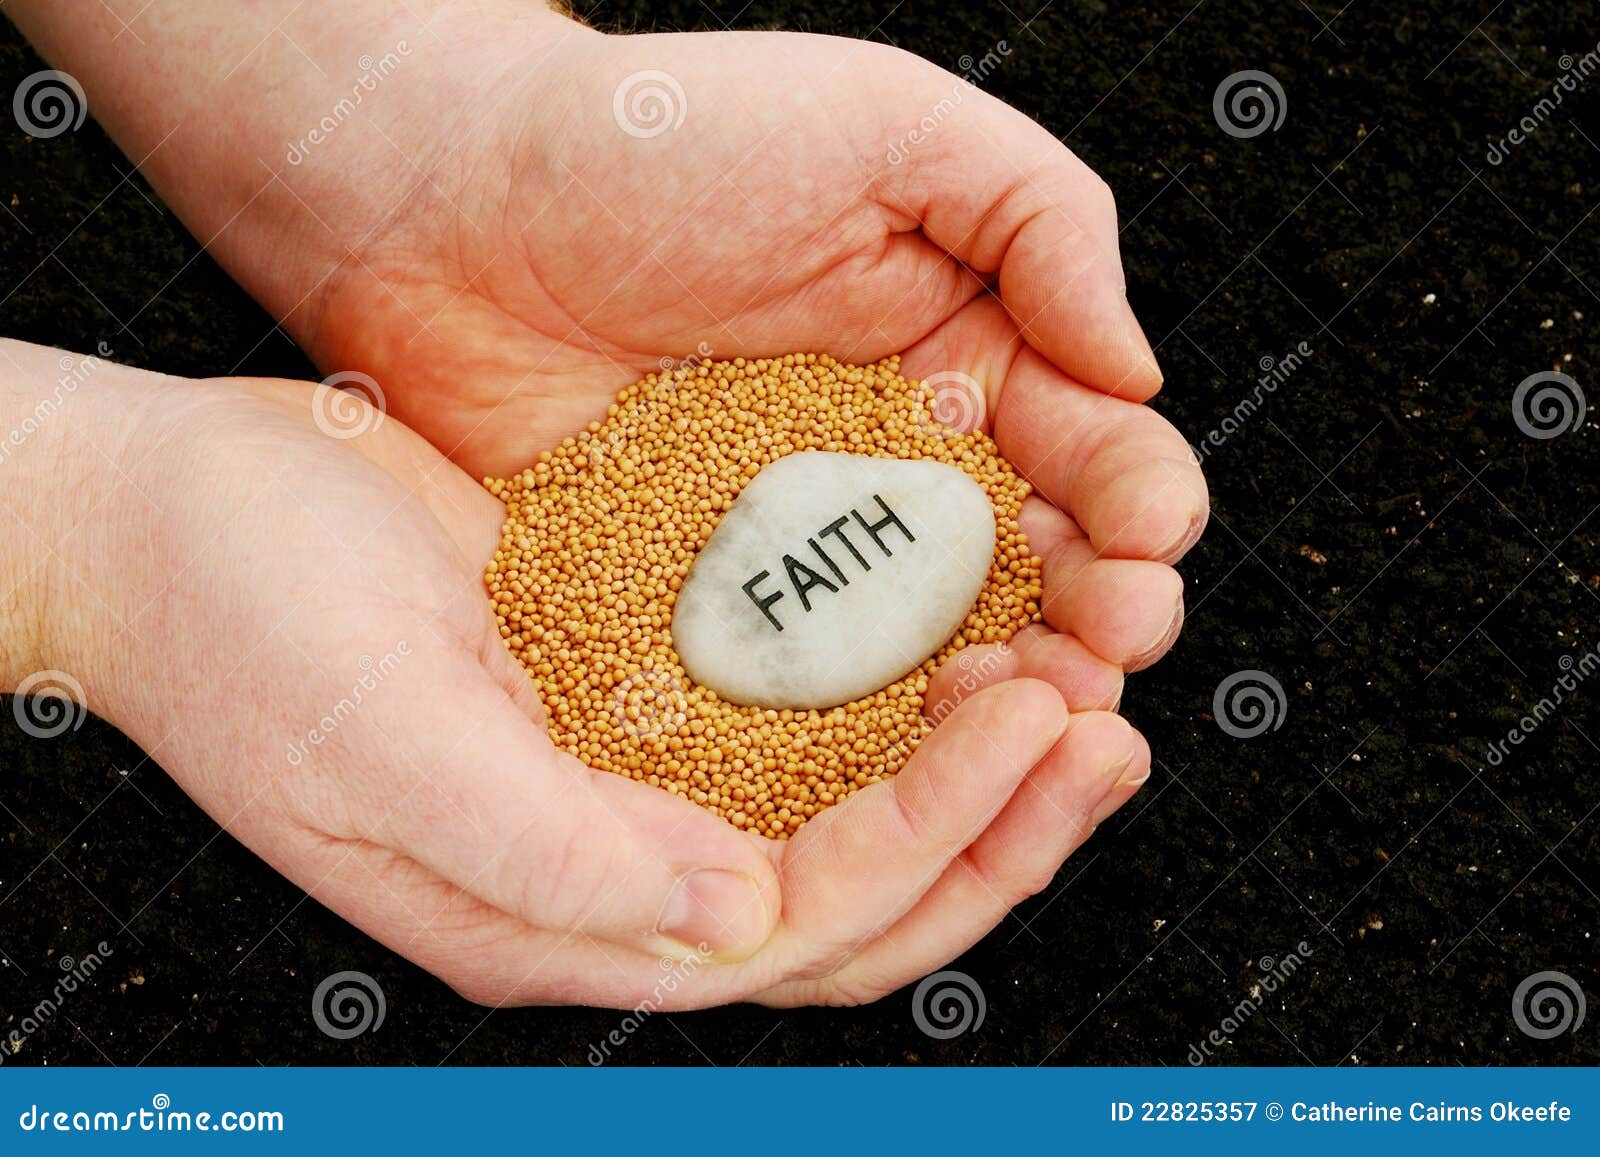 planting seeds of faith